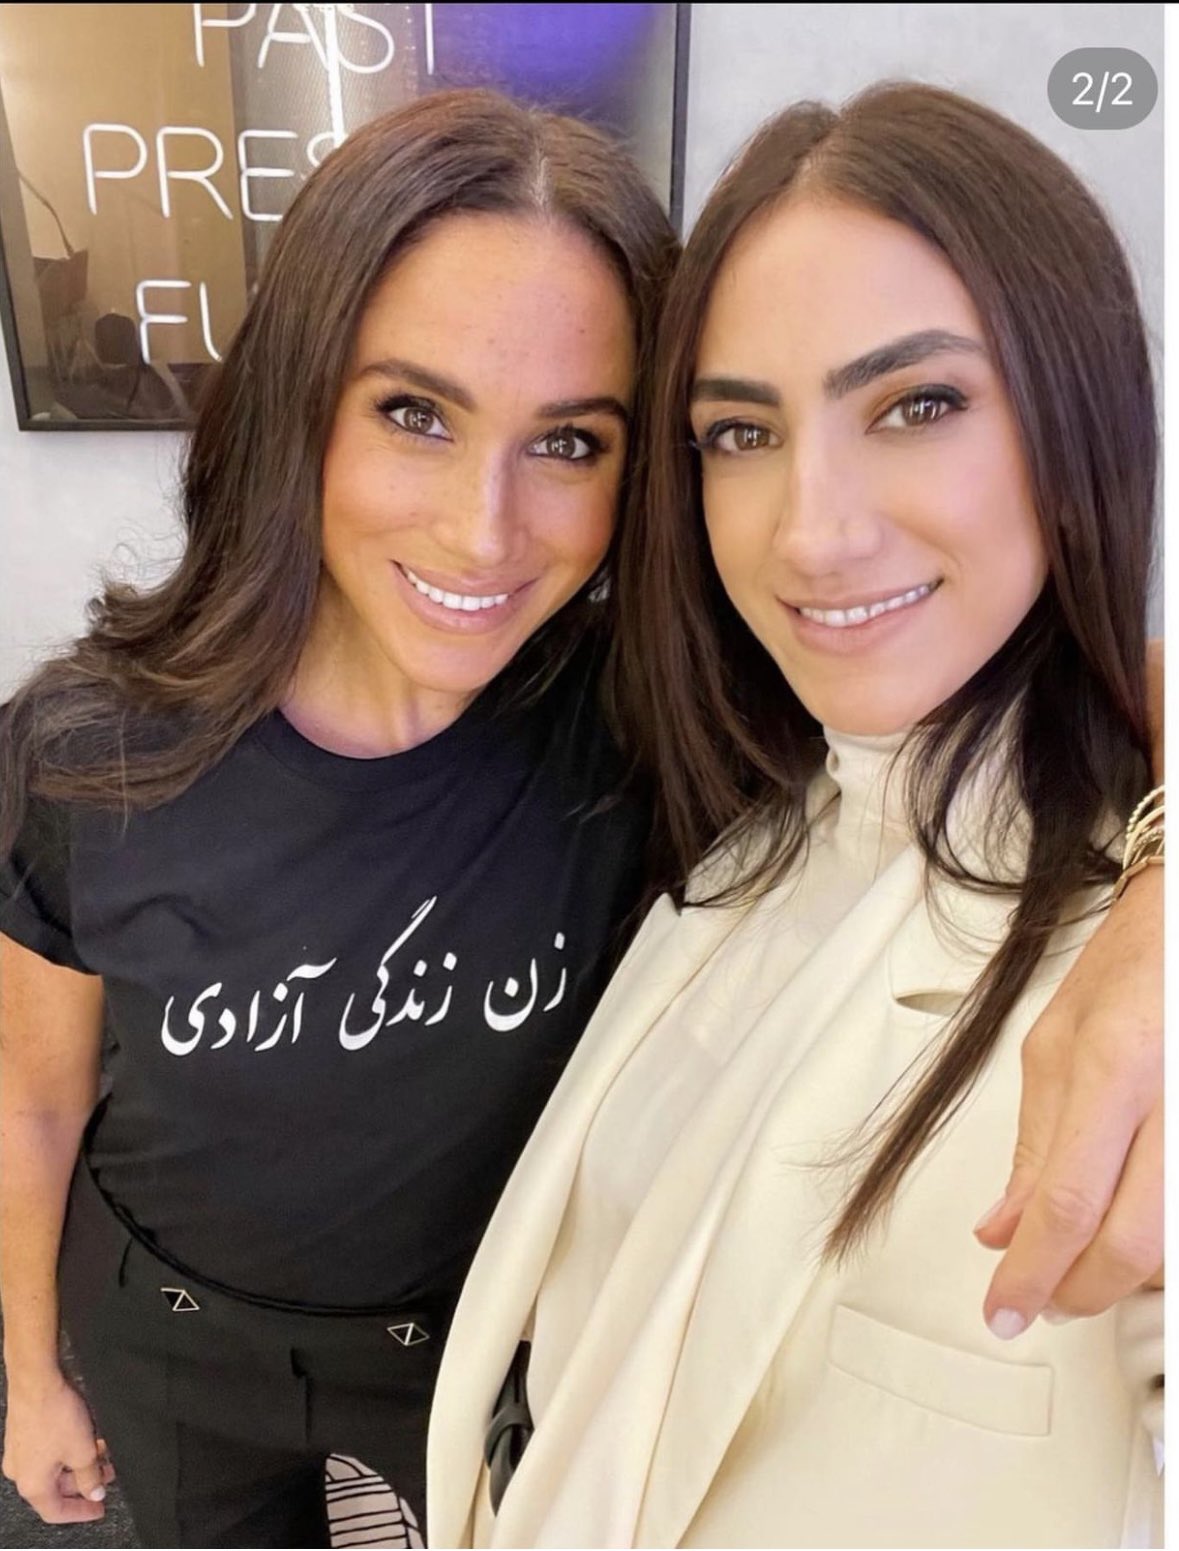 Меган Маркл поддержала иранских женщин, надев футболку с надписью